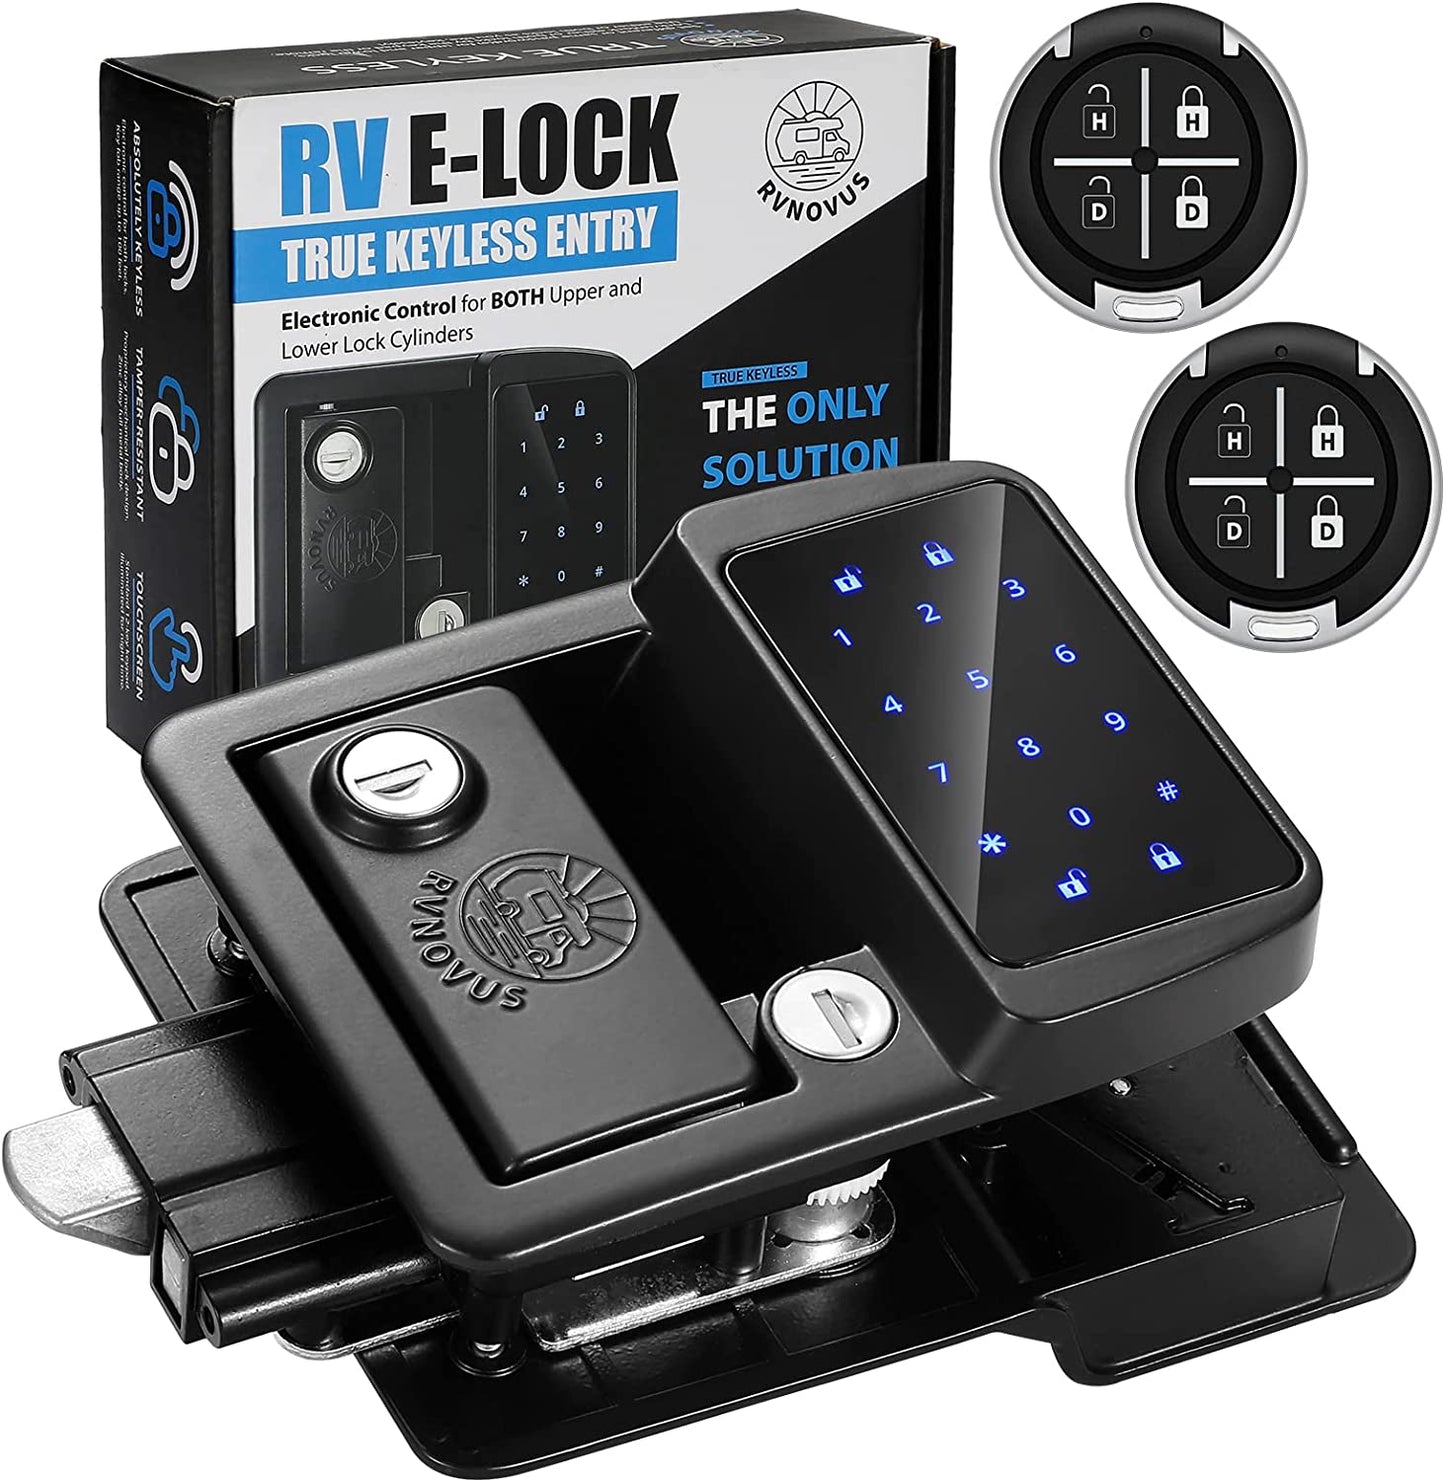 RVNOVUS Keyless RV E-Lock